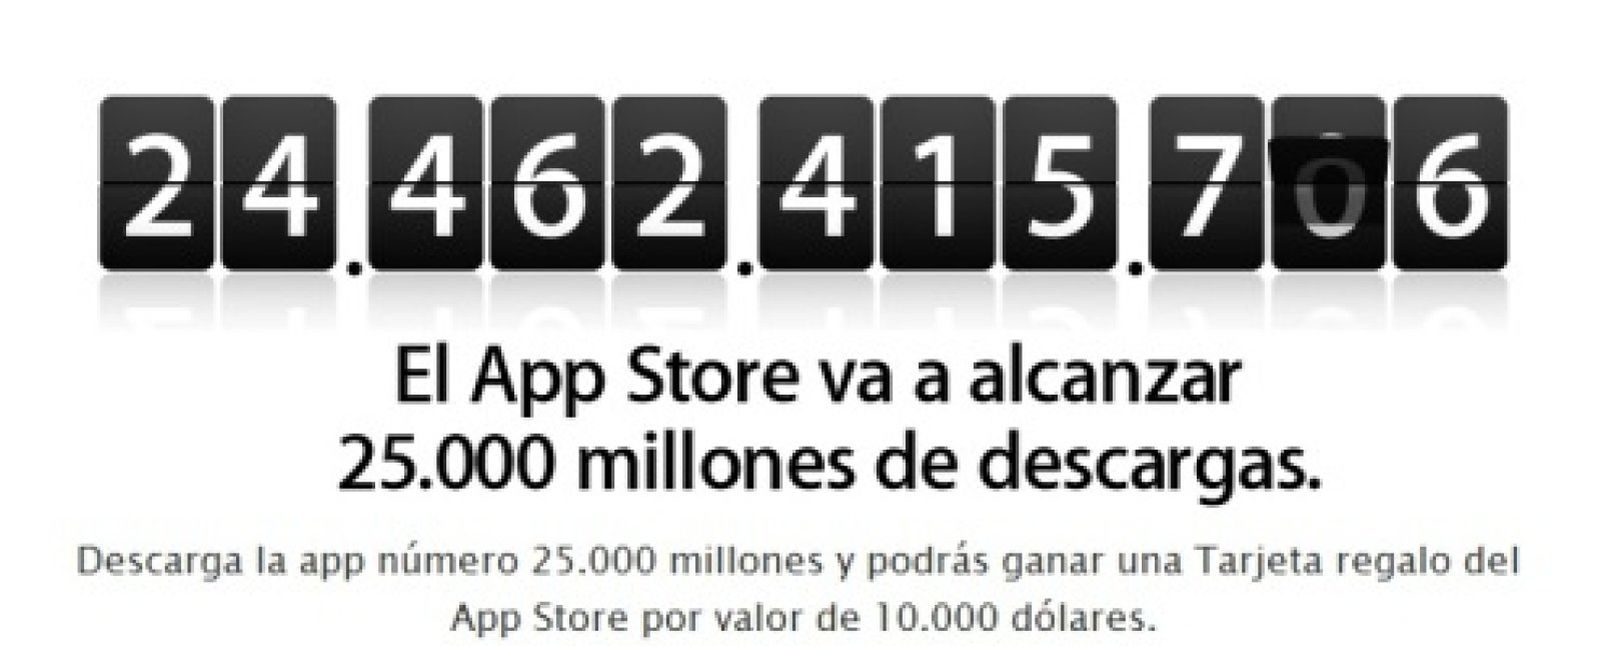 Foto: AppleStore: cada día se descargan 49 millones de aplicaciones